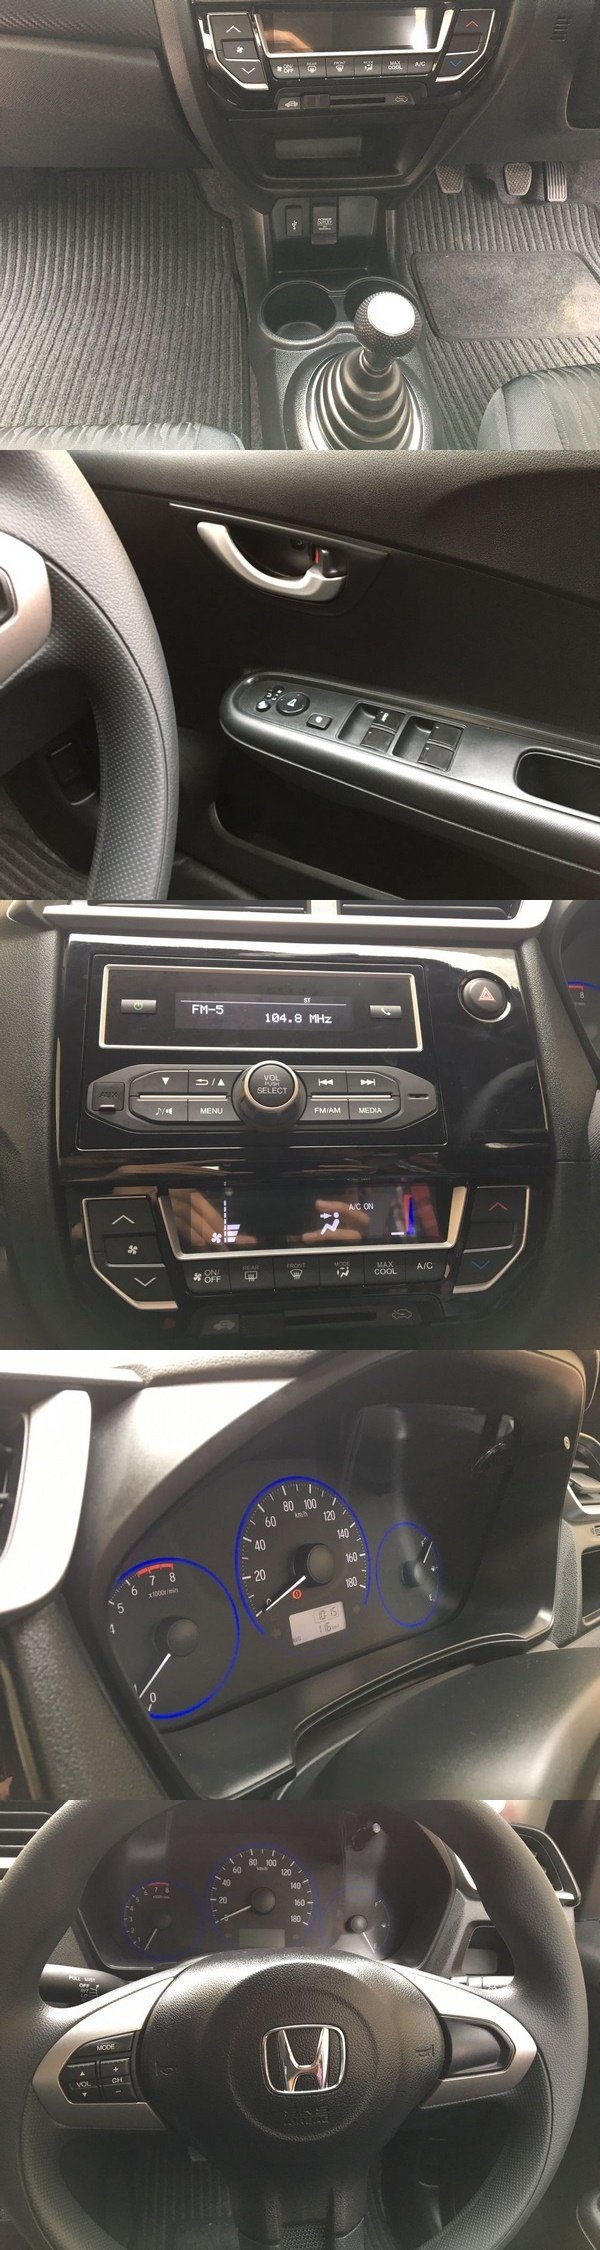 Honda Brio 2016 Facelift interior